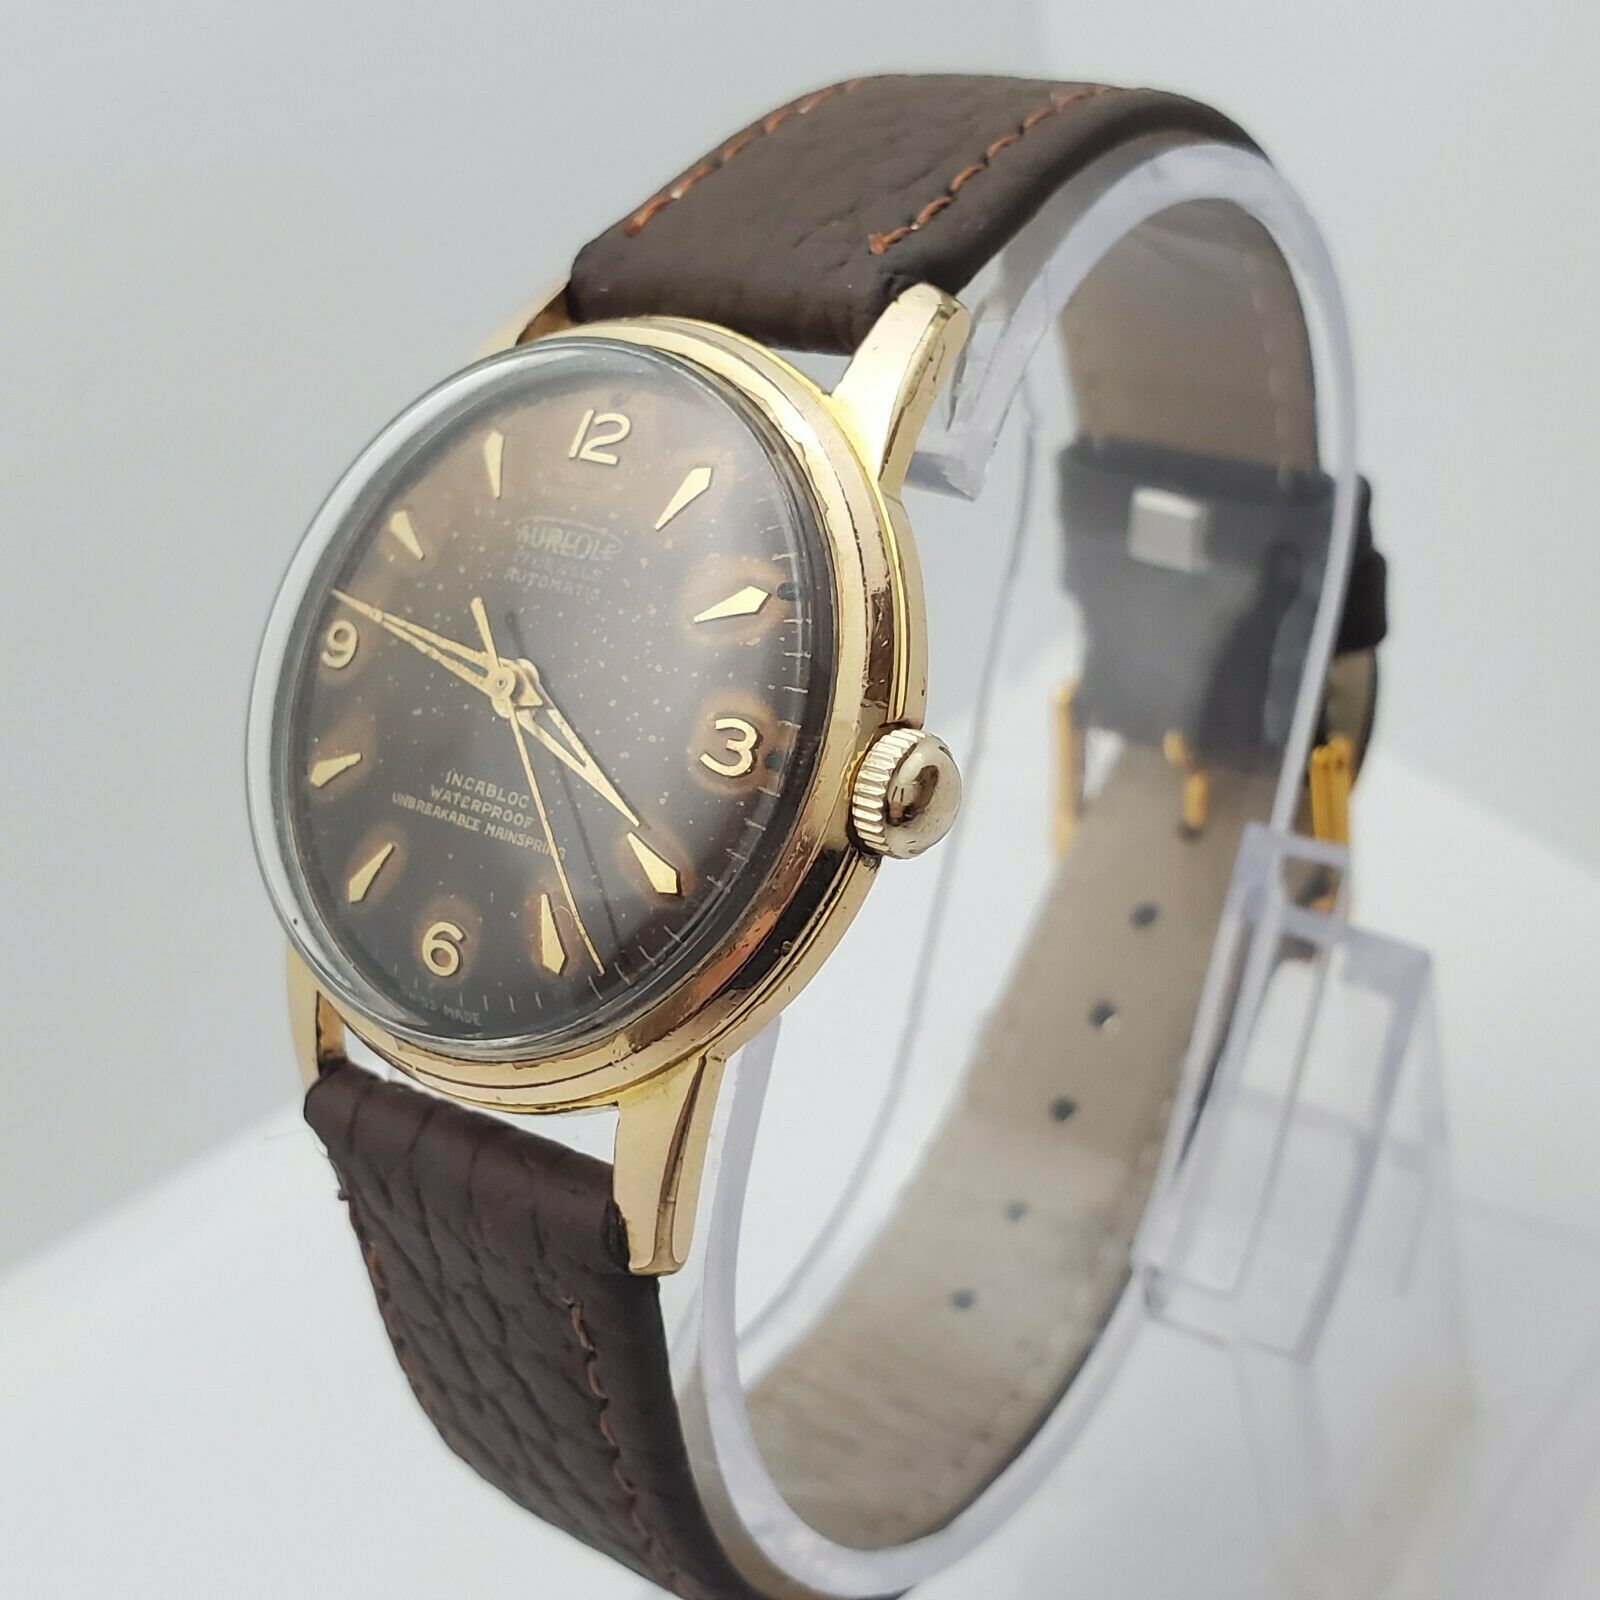 AUREOLE Wristwatches | eBay